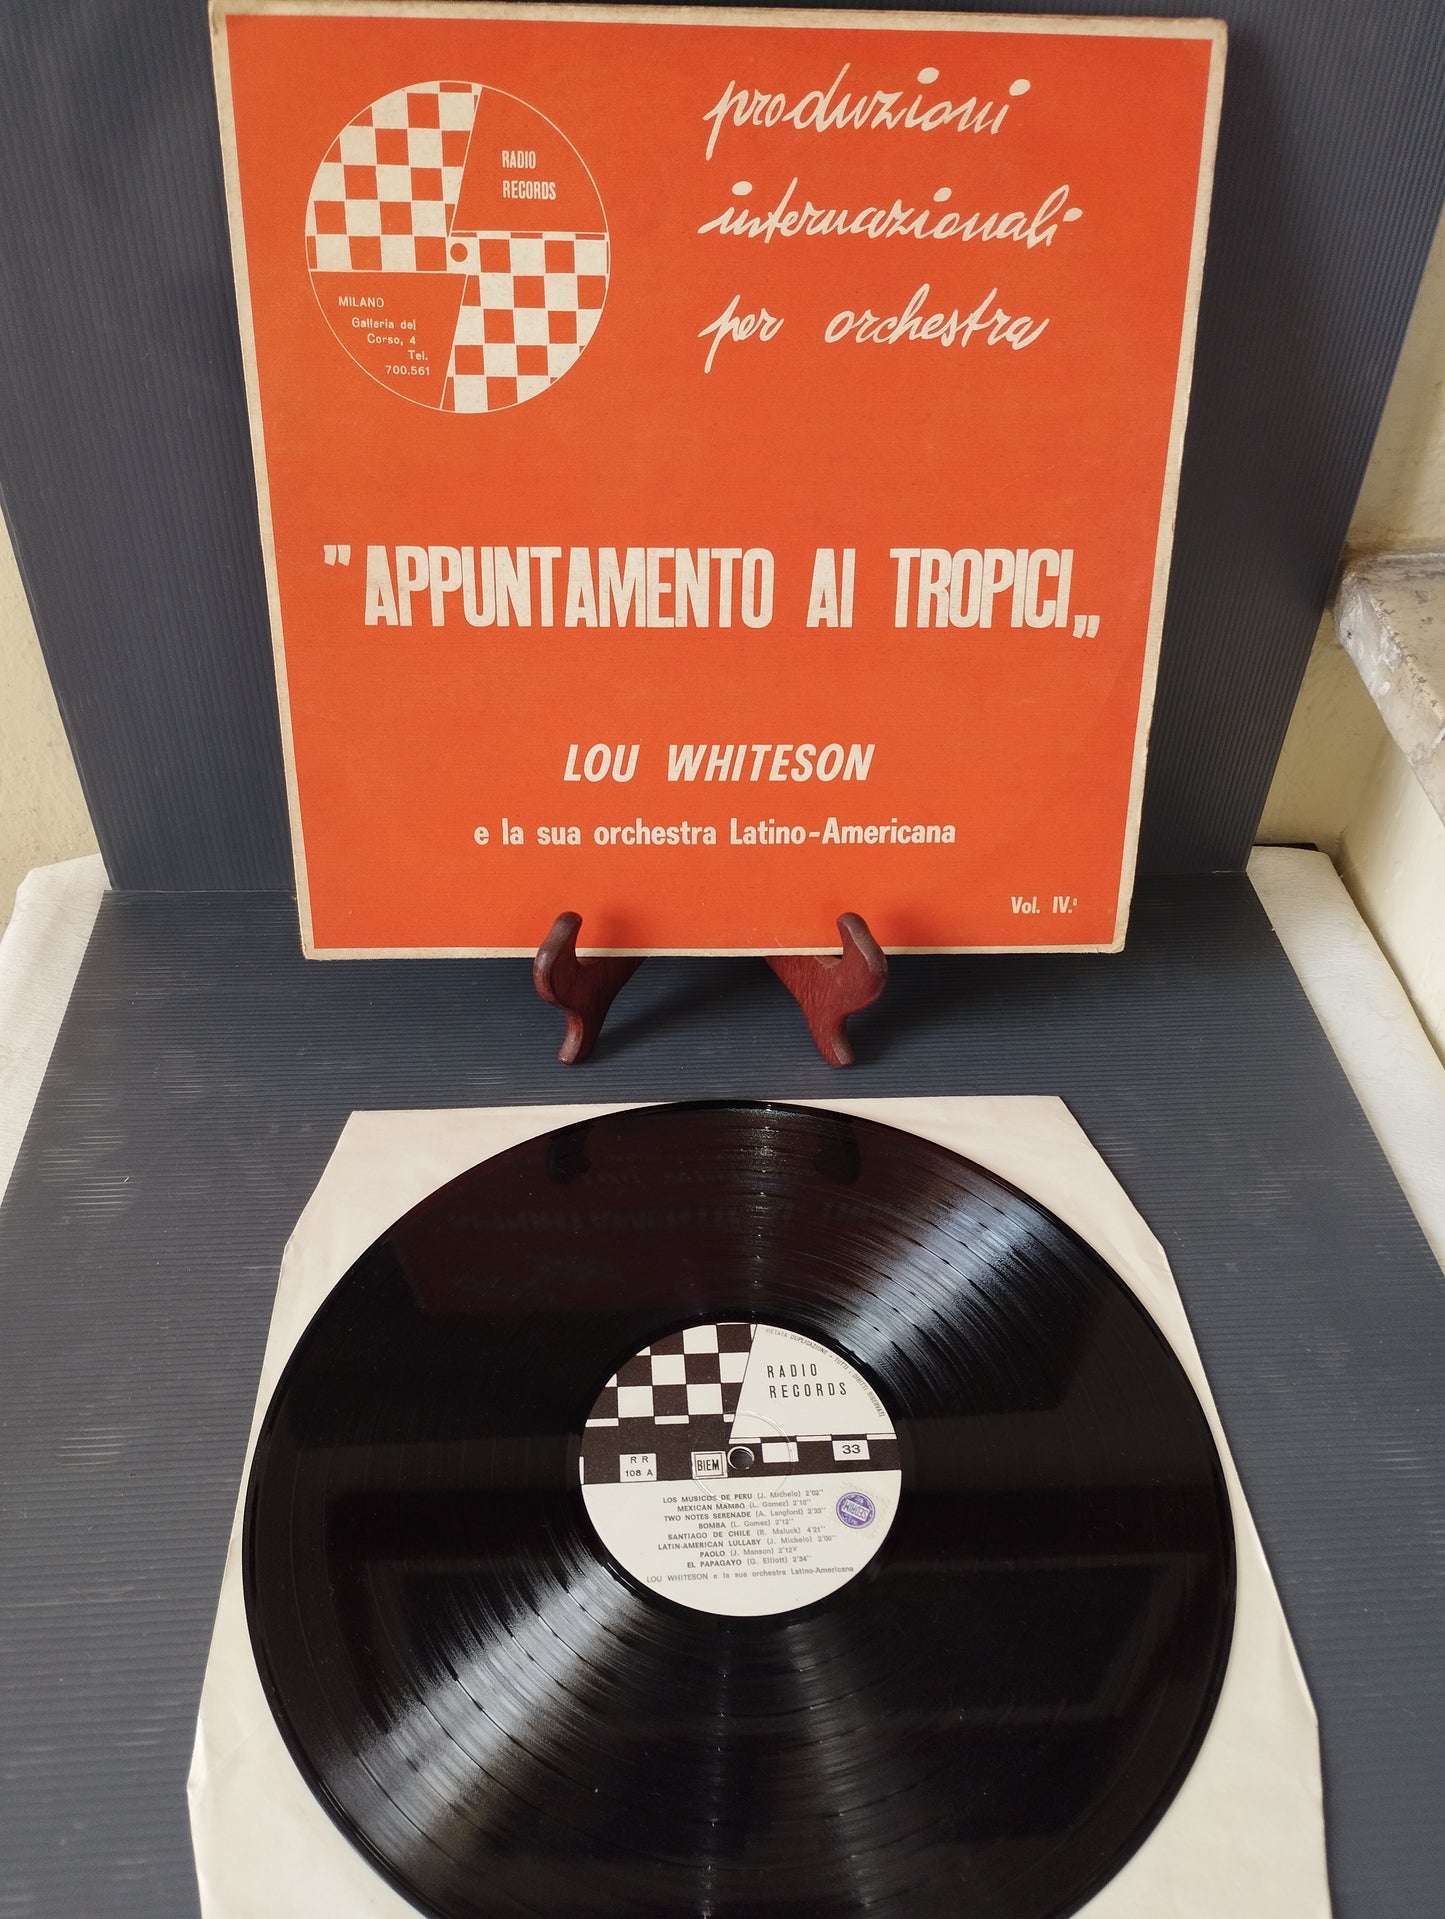 Appuntamento Ai Tropici Vol.IV" Lou Whiteson Lp 33 giri

Edito nel 1966 da  Radio Records